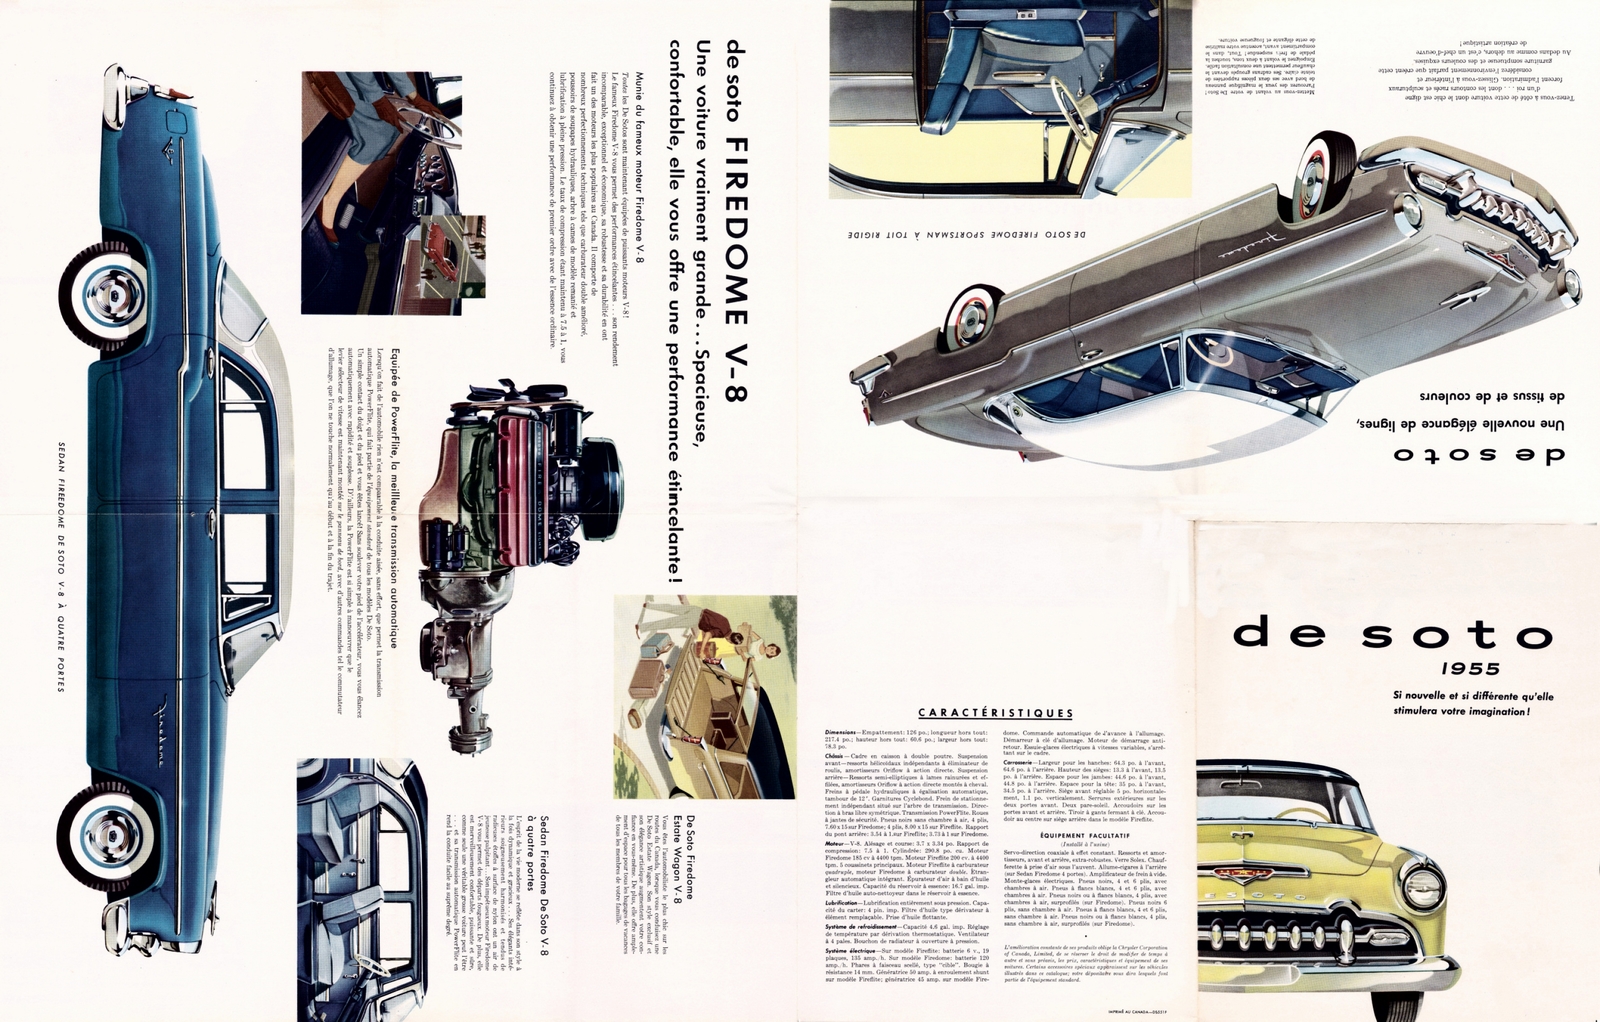 n_1955 DeSoto Foldout (Cdn-Fr)-Side A.jpg